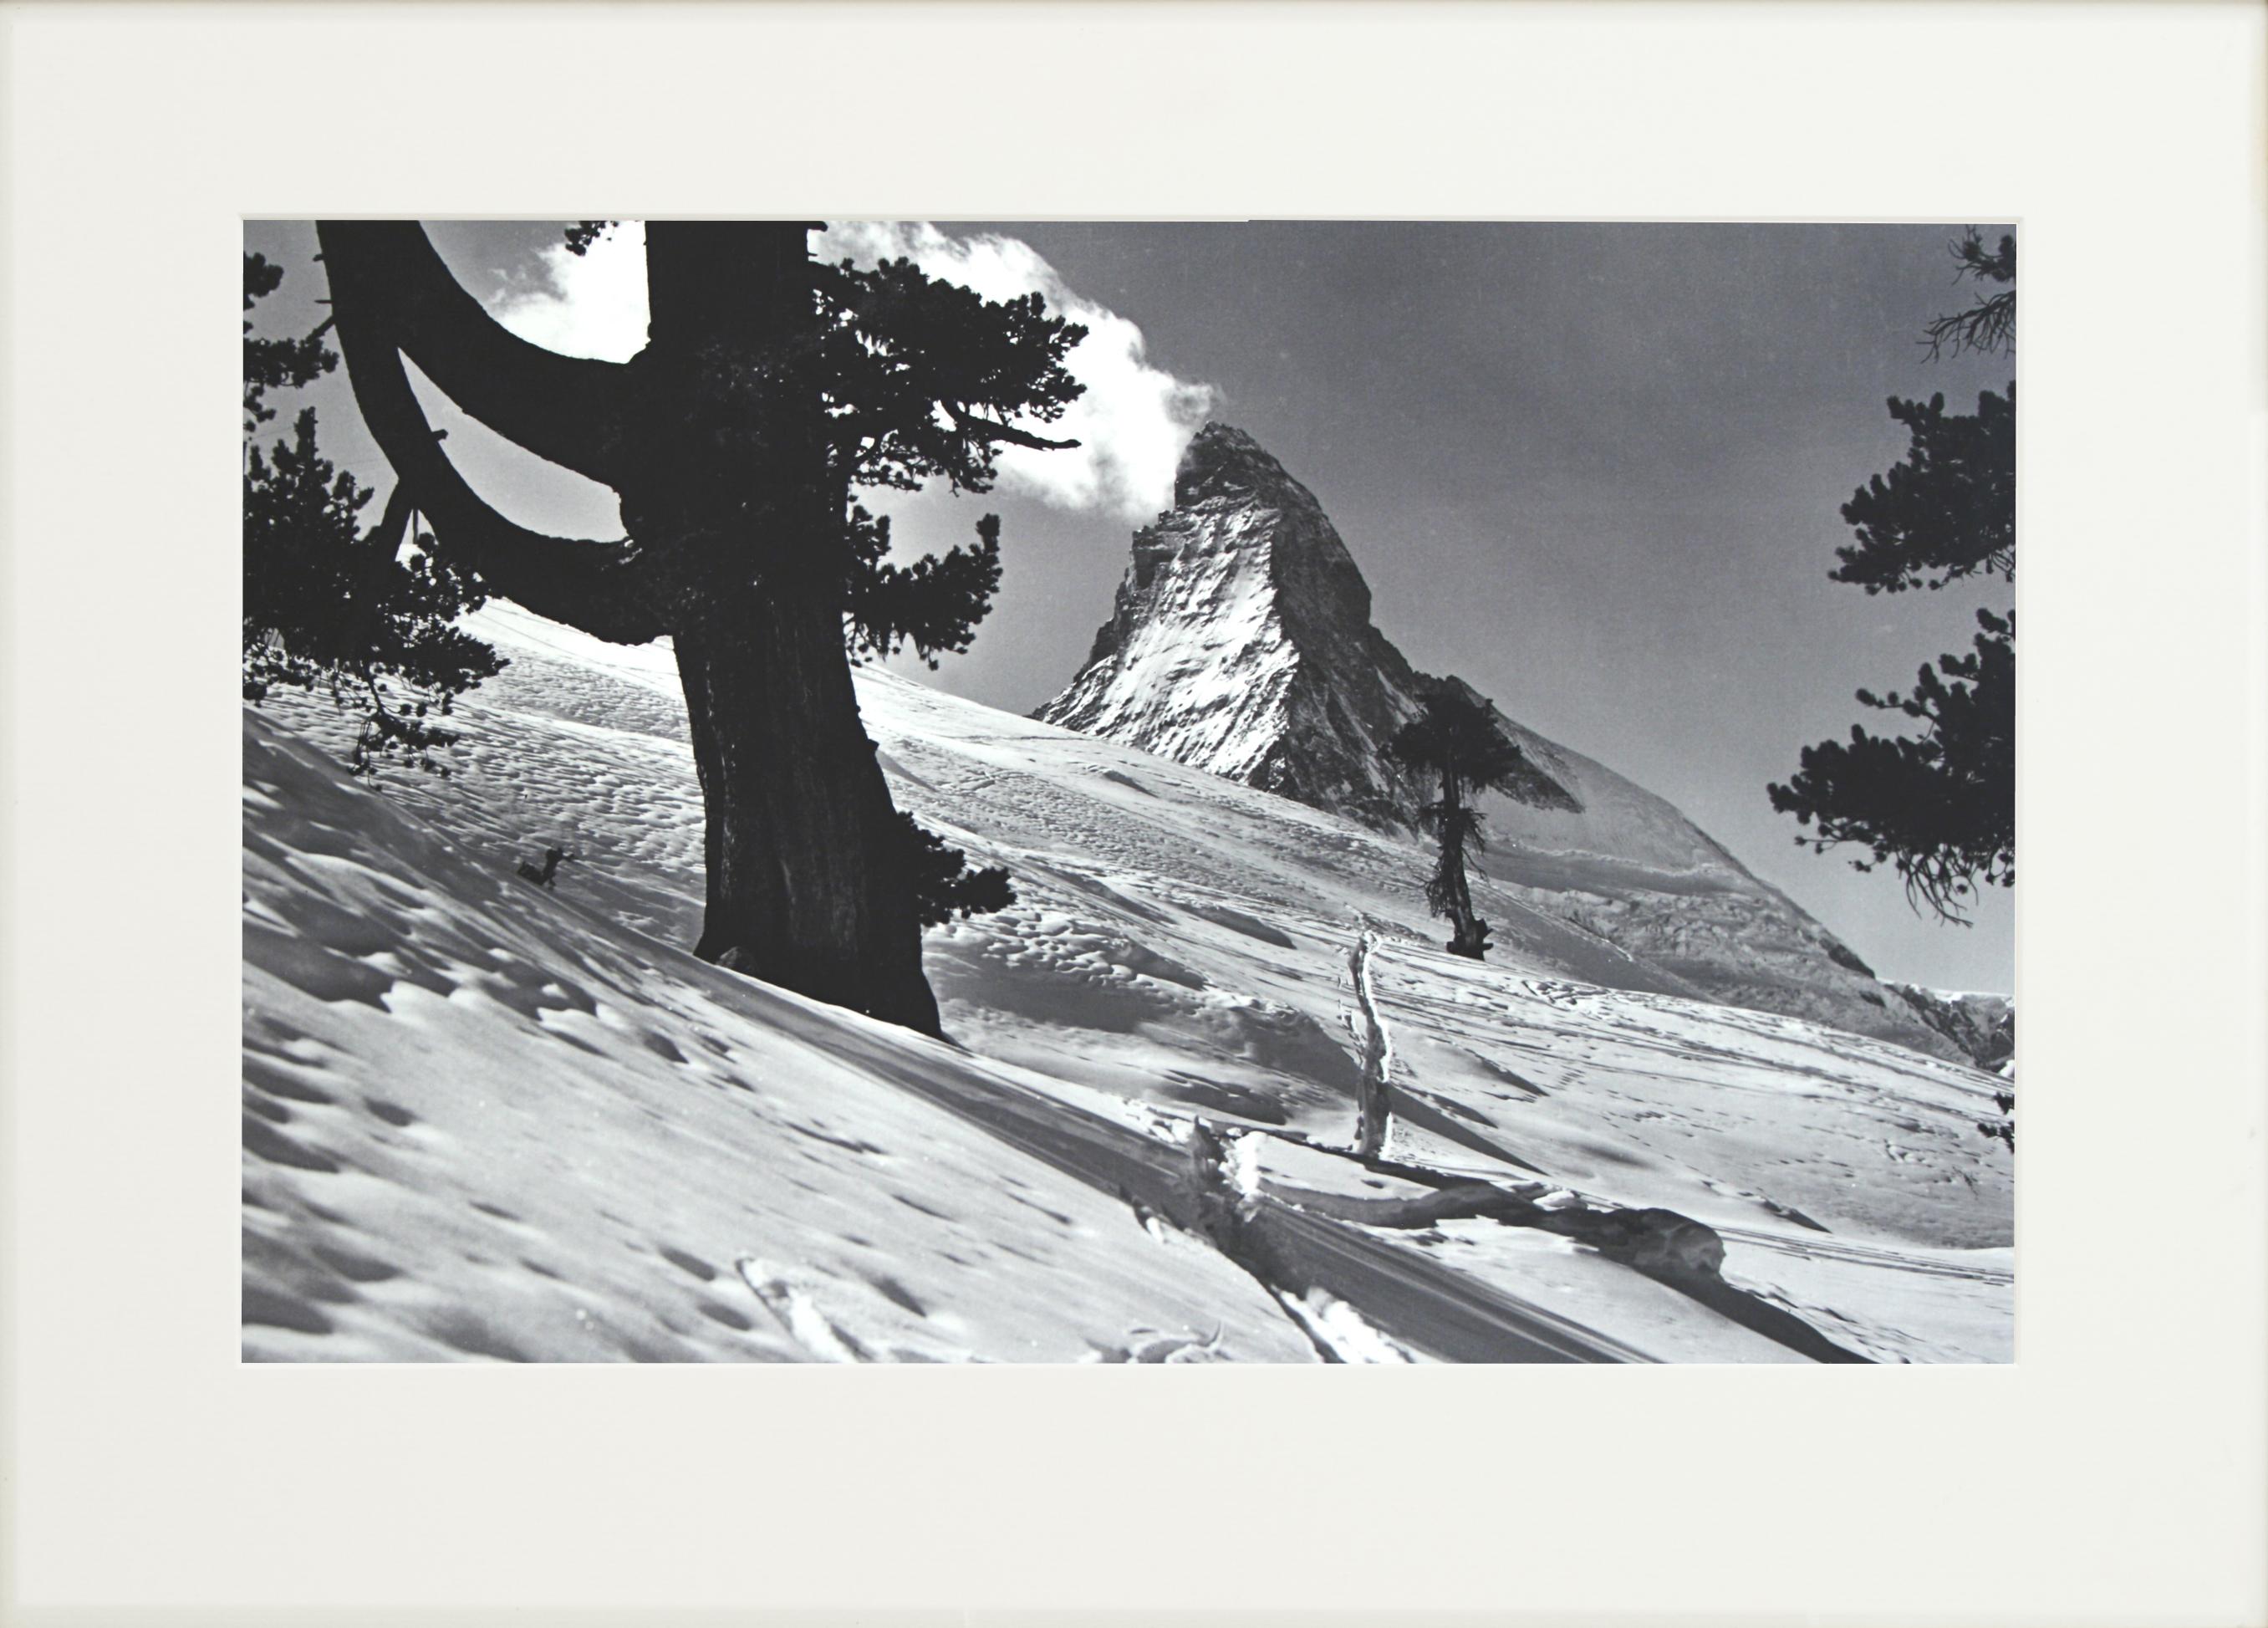 Sporting Art Alpine Ski Photograph, 'Matterhorn' Taken from Original 1930s Photograph